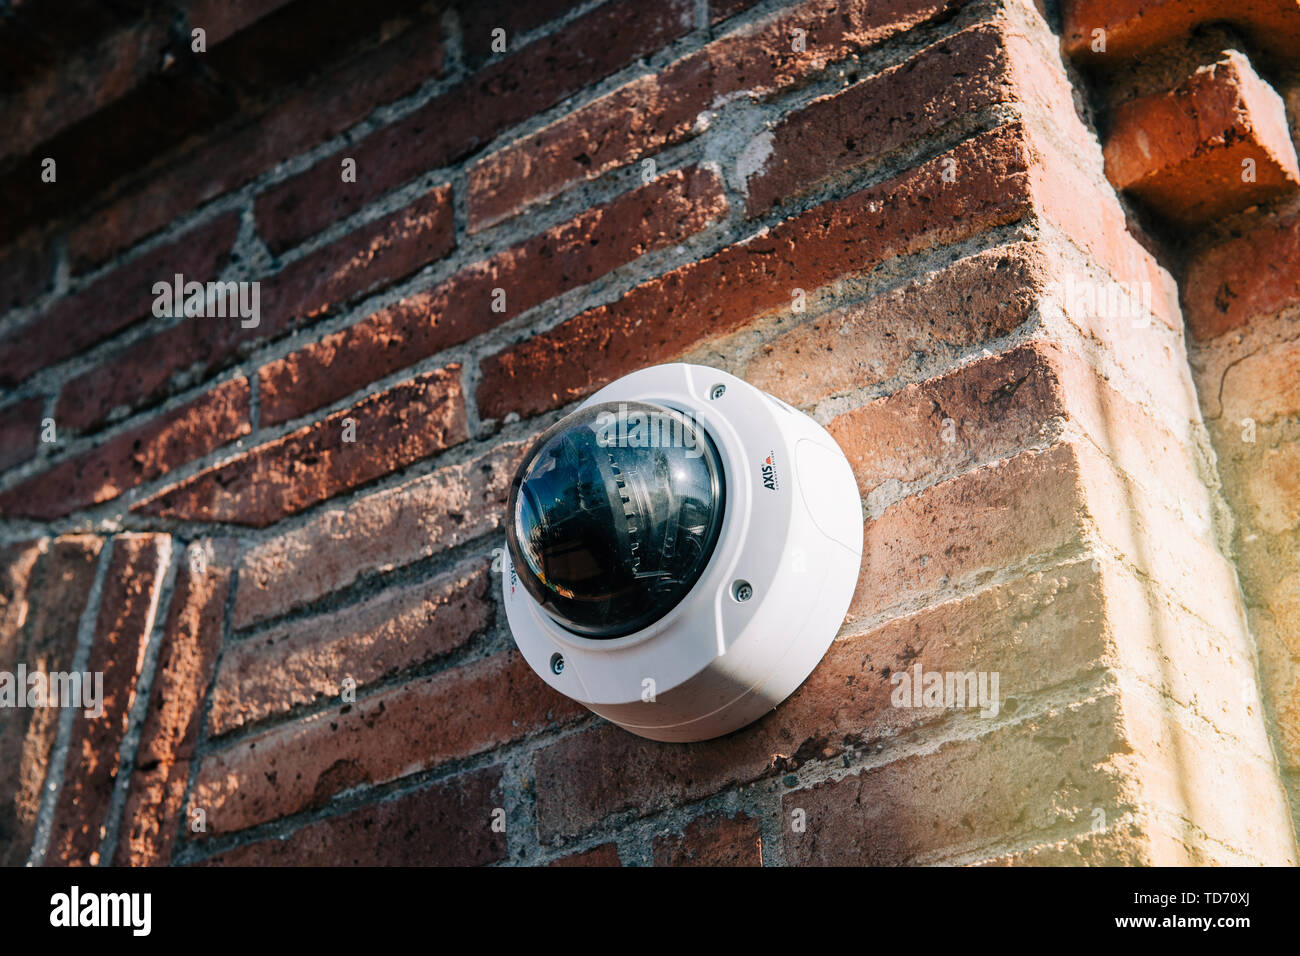 Barcelona, España - Nov 14, 2017: la cámara de vigilancia AXIS 360 grados  sobre la pared de ladrillo. Axis Communications AB es un fabricante sueco  de cámara de red Fotografía de stock - Alamy